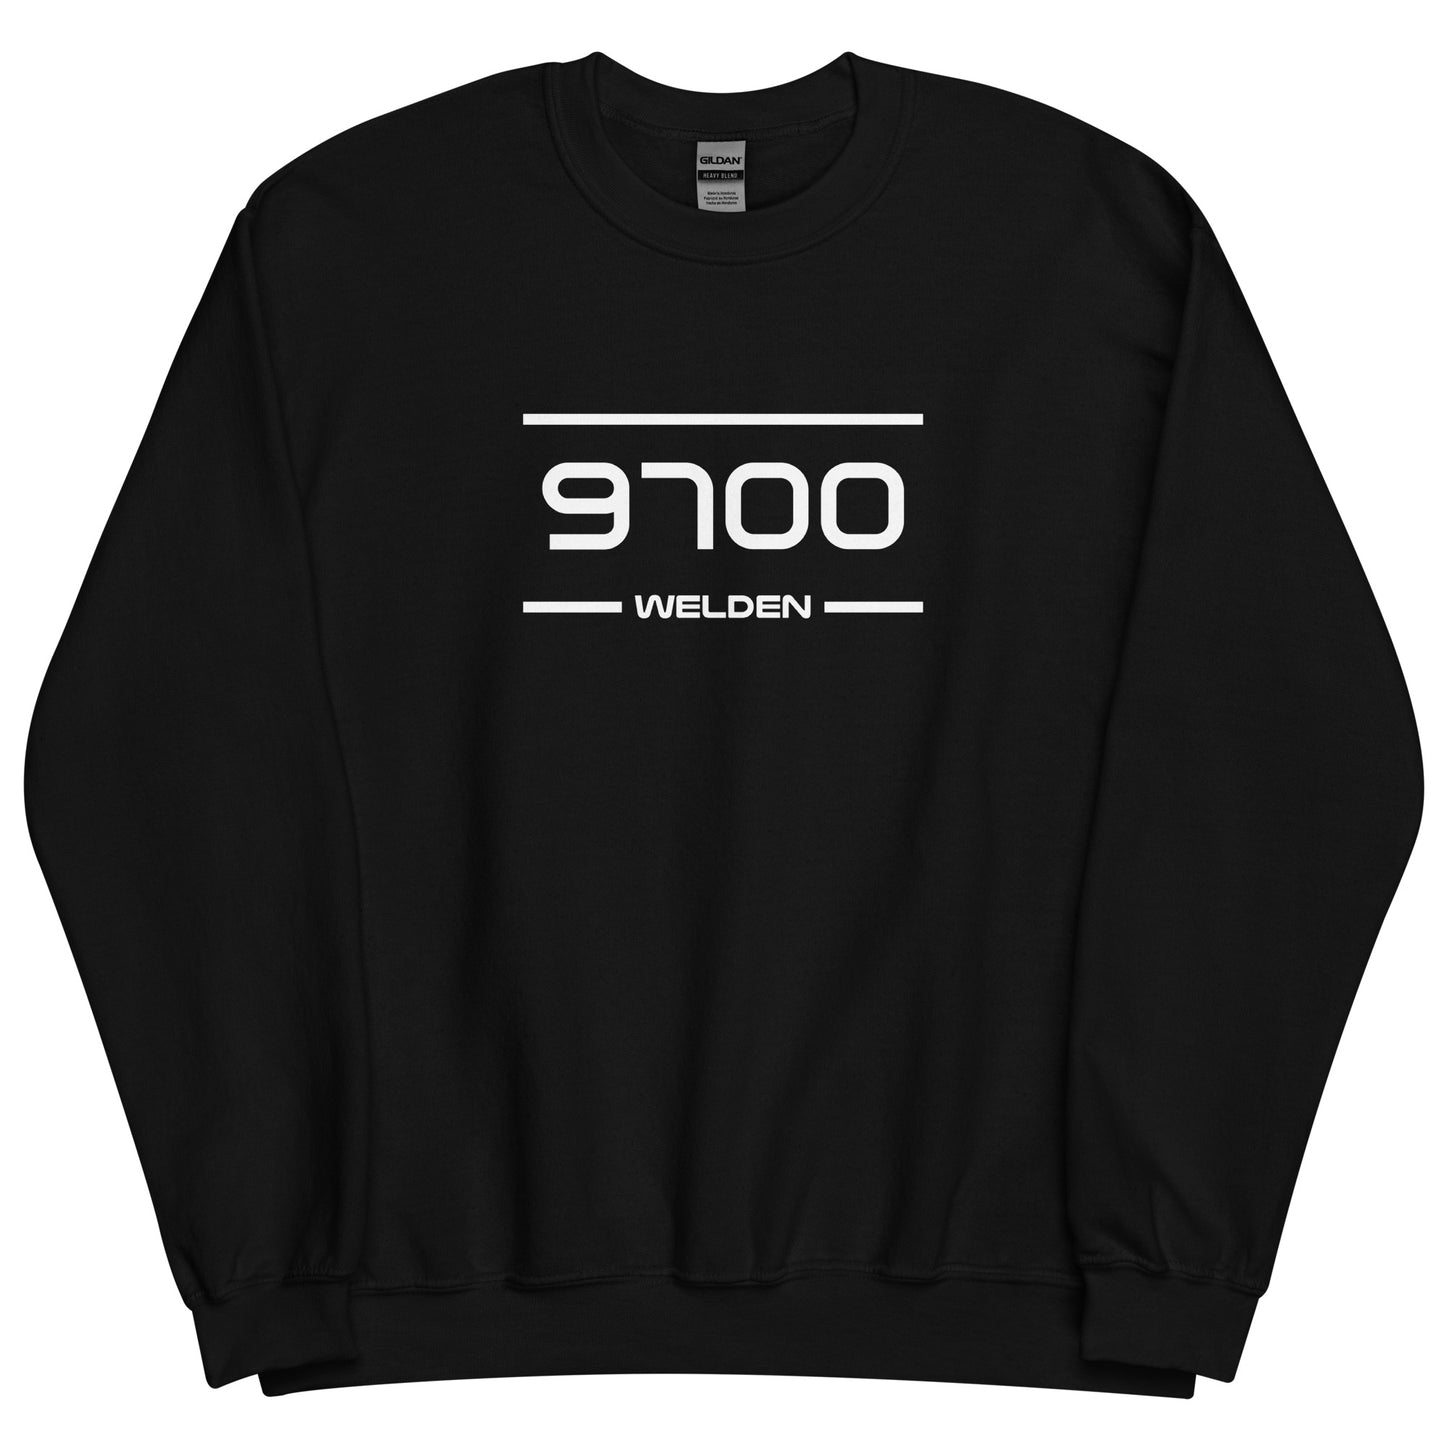 Sweater - 9700 - Welden (M/V)